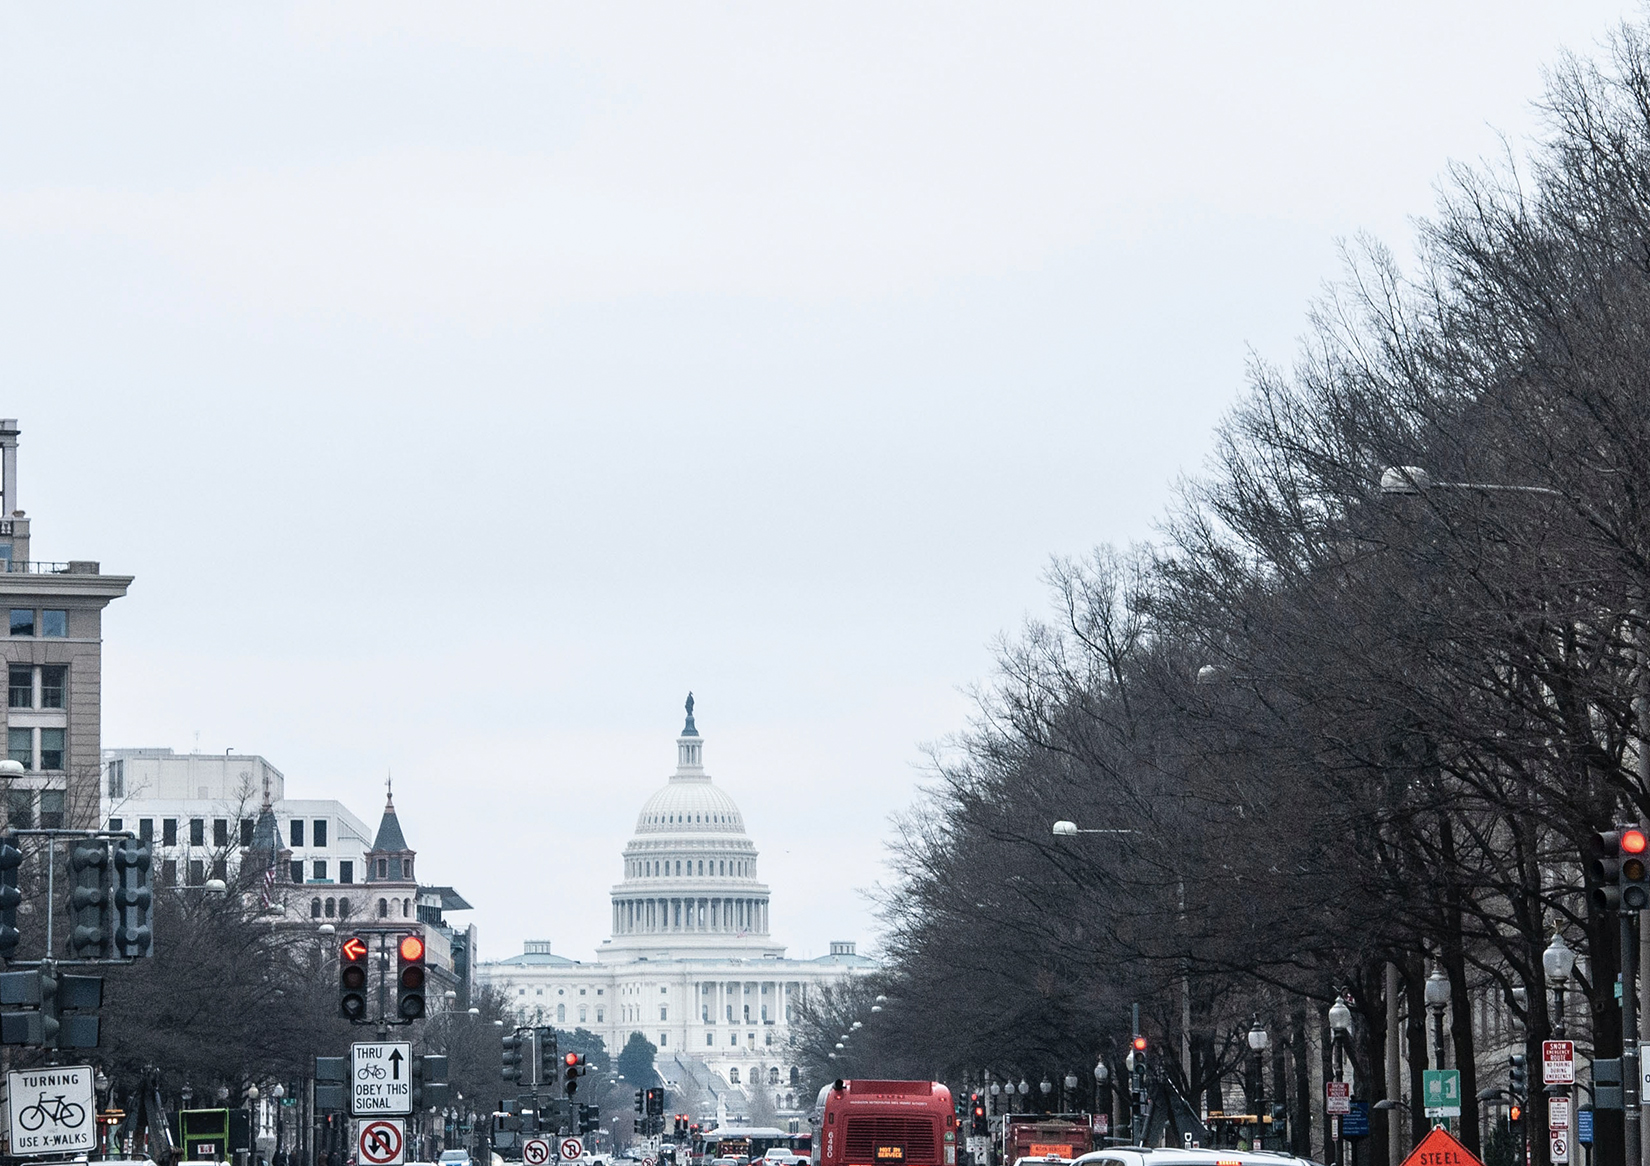 Washington DC Capitol-Maria Oswalt-Unsplash